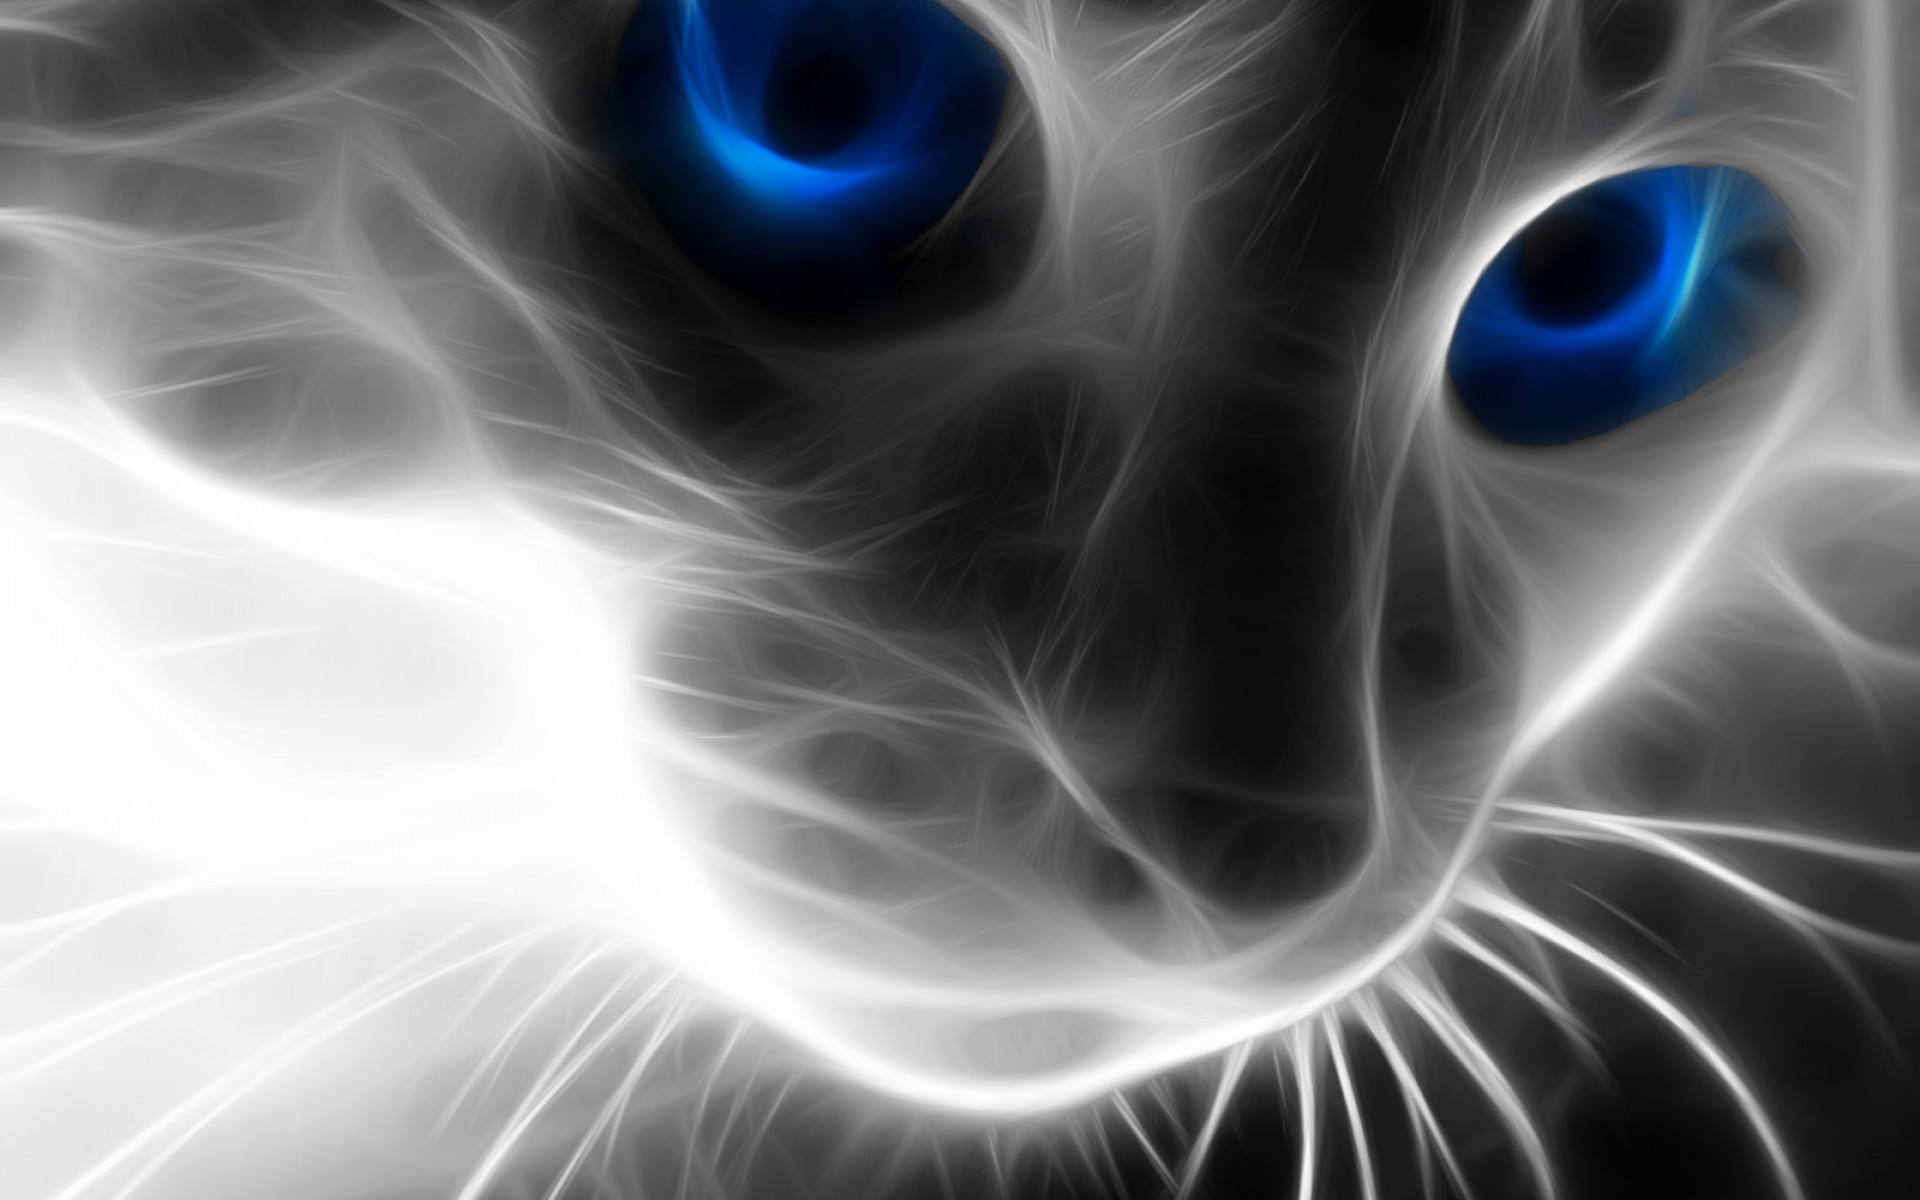 A világ legunalmasabb cica játéka egy CITROMMAL! – videó